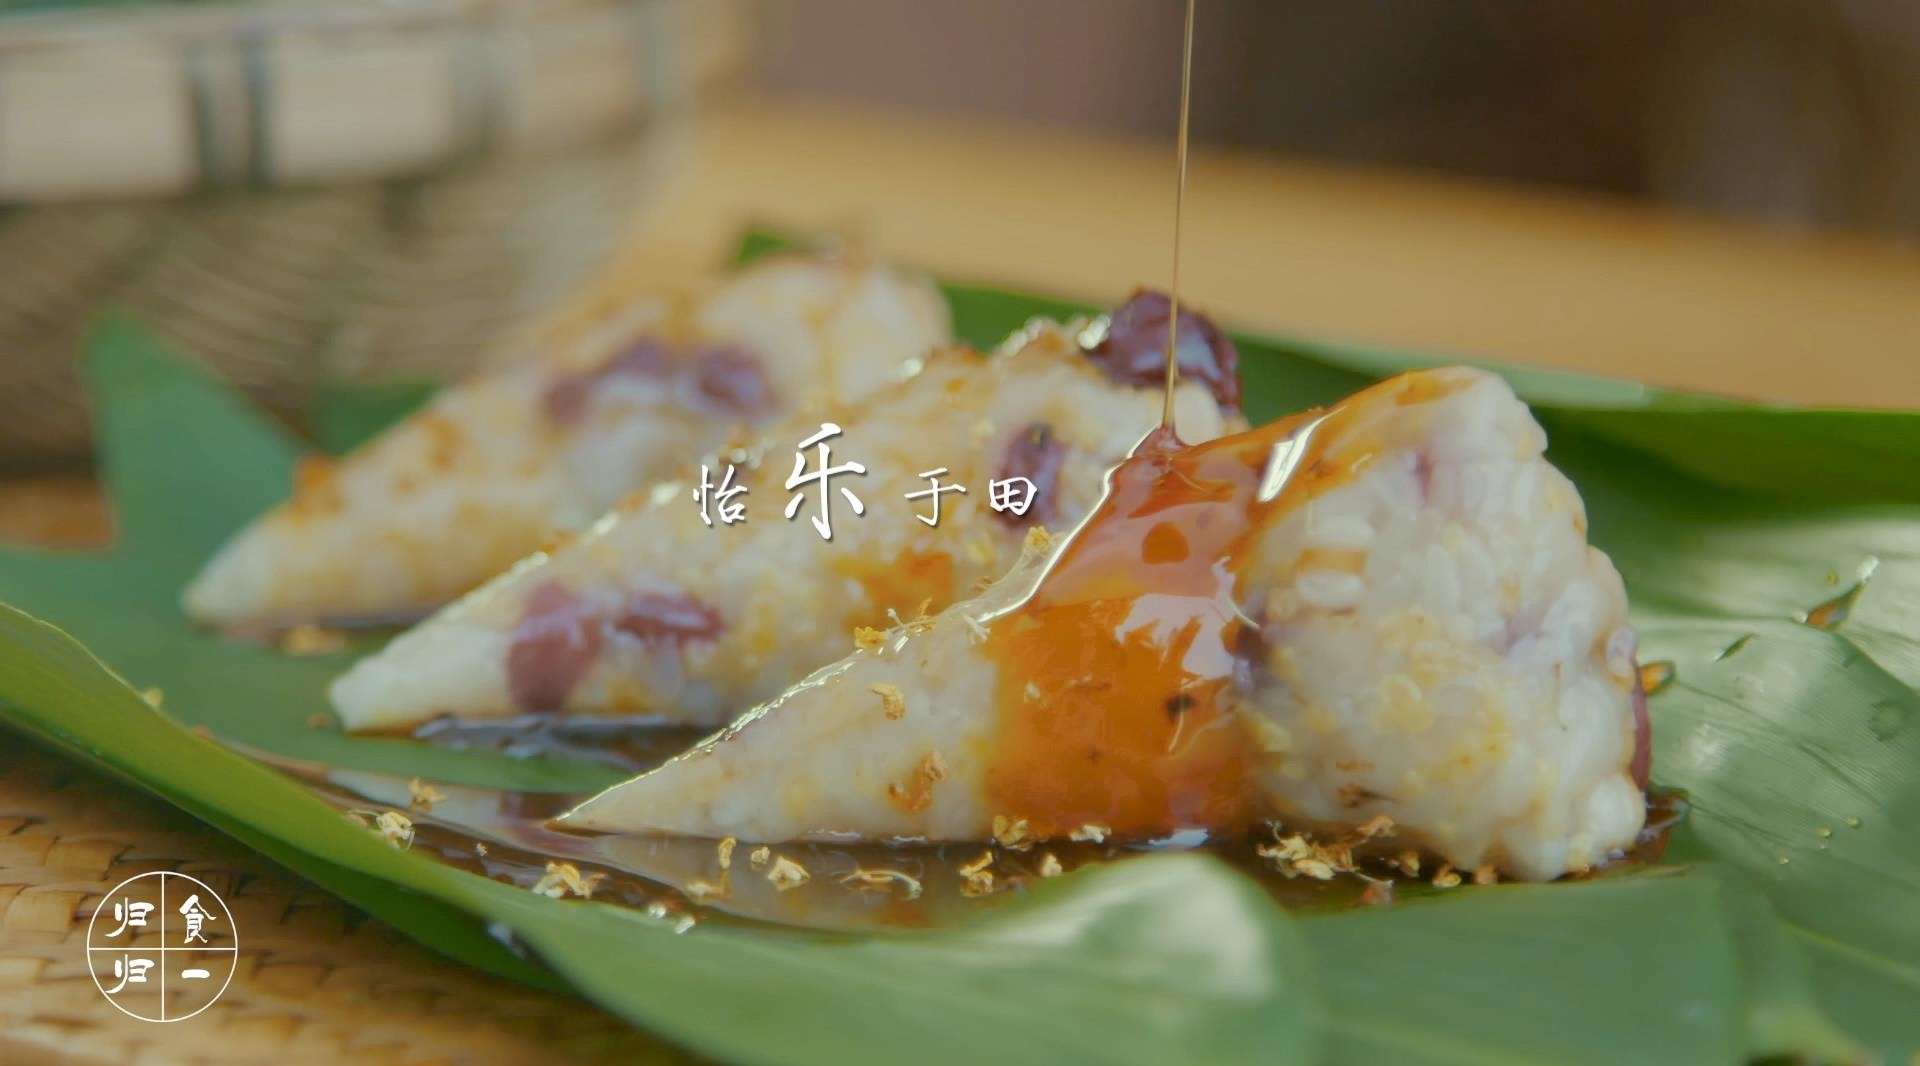 自制田园美食节目《归食归一》宣传视频